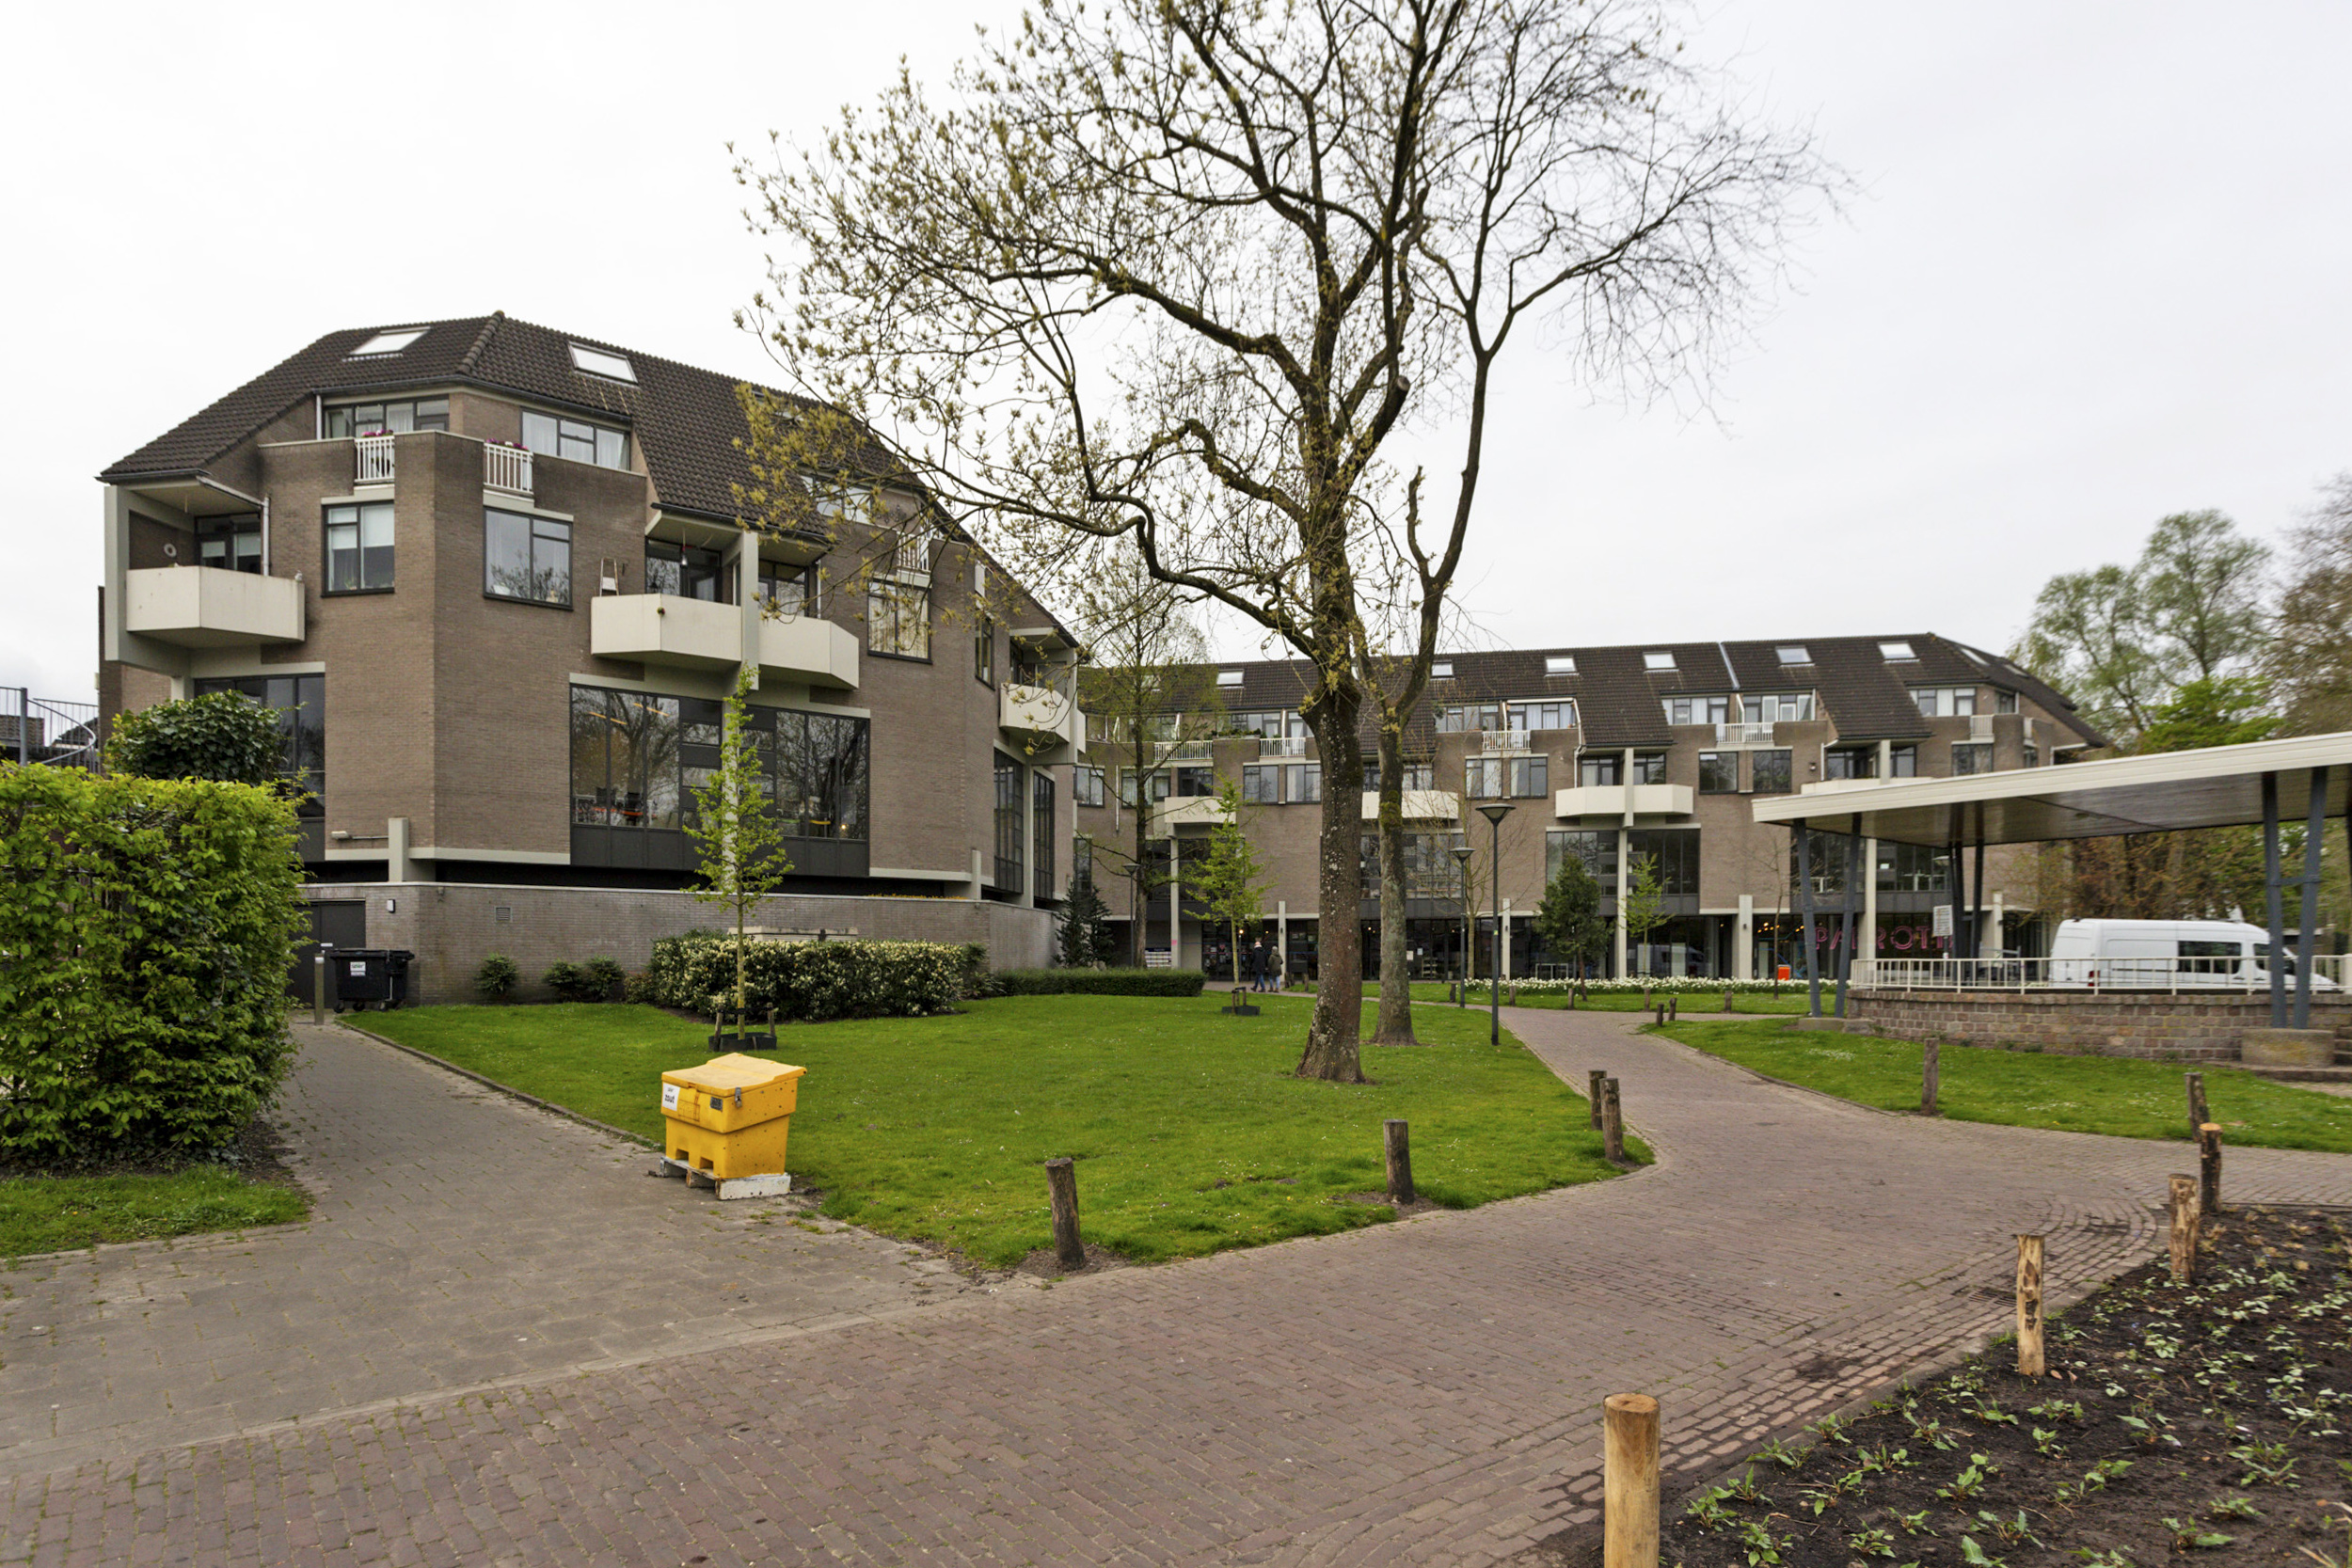 Marktstede 78, 4701 PZ Roosendaal, Nederland